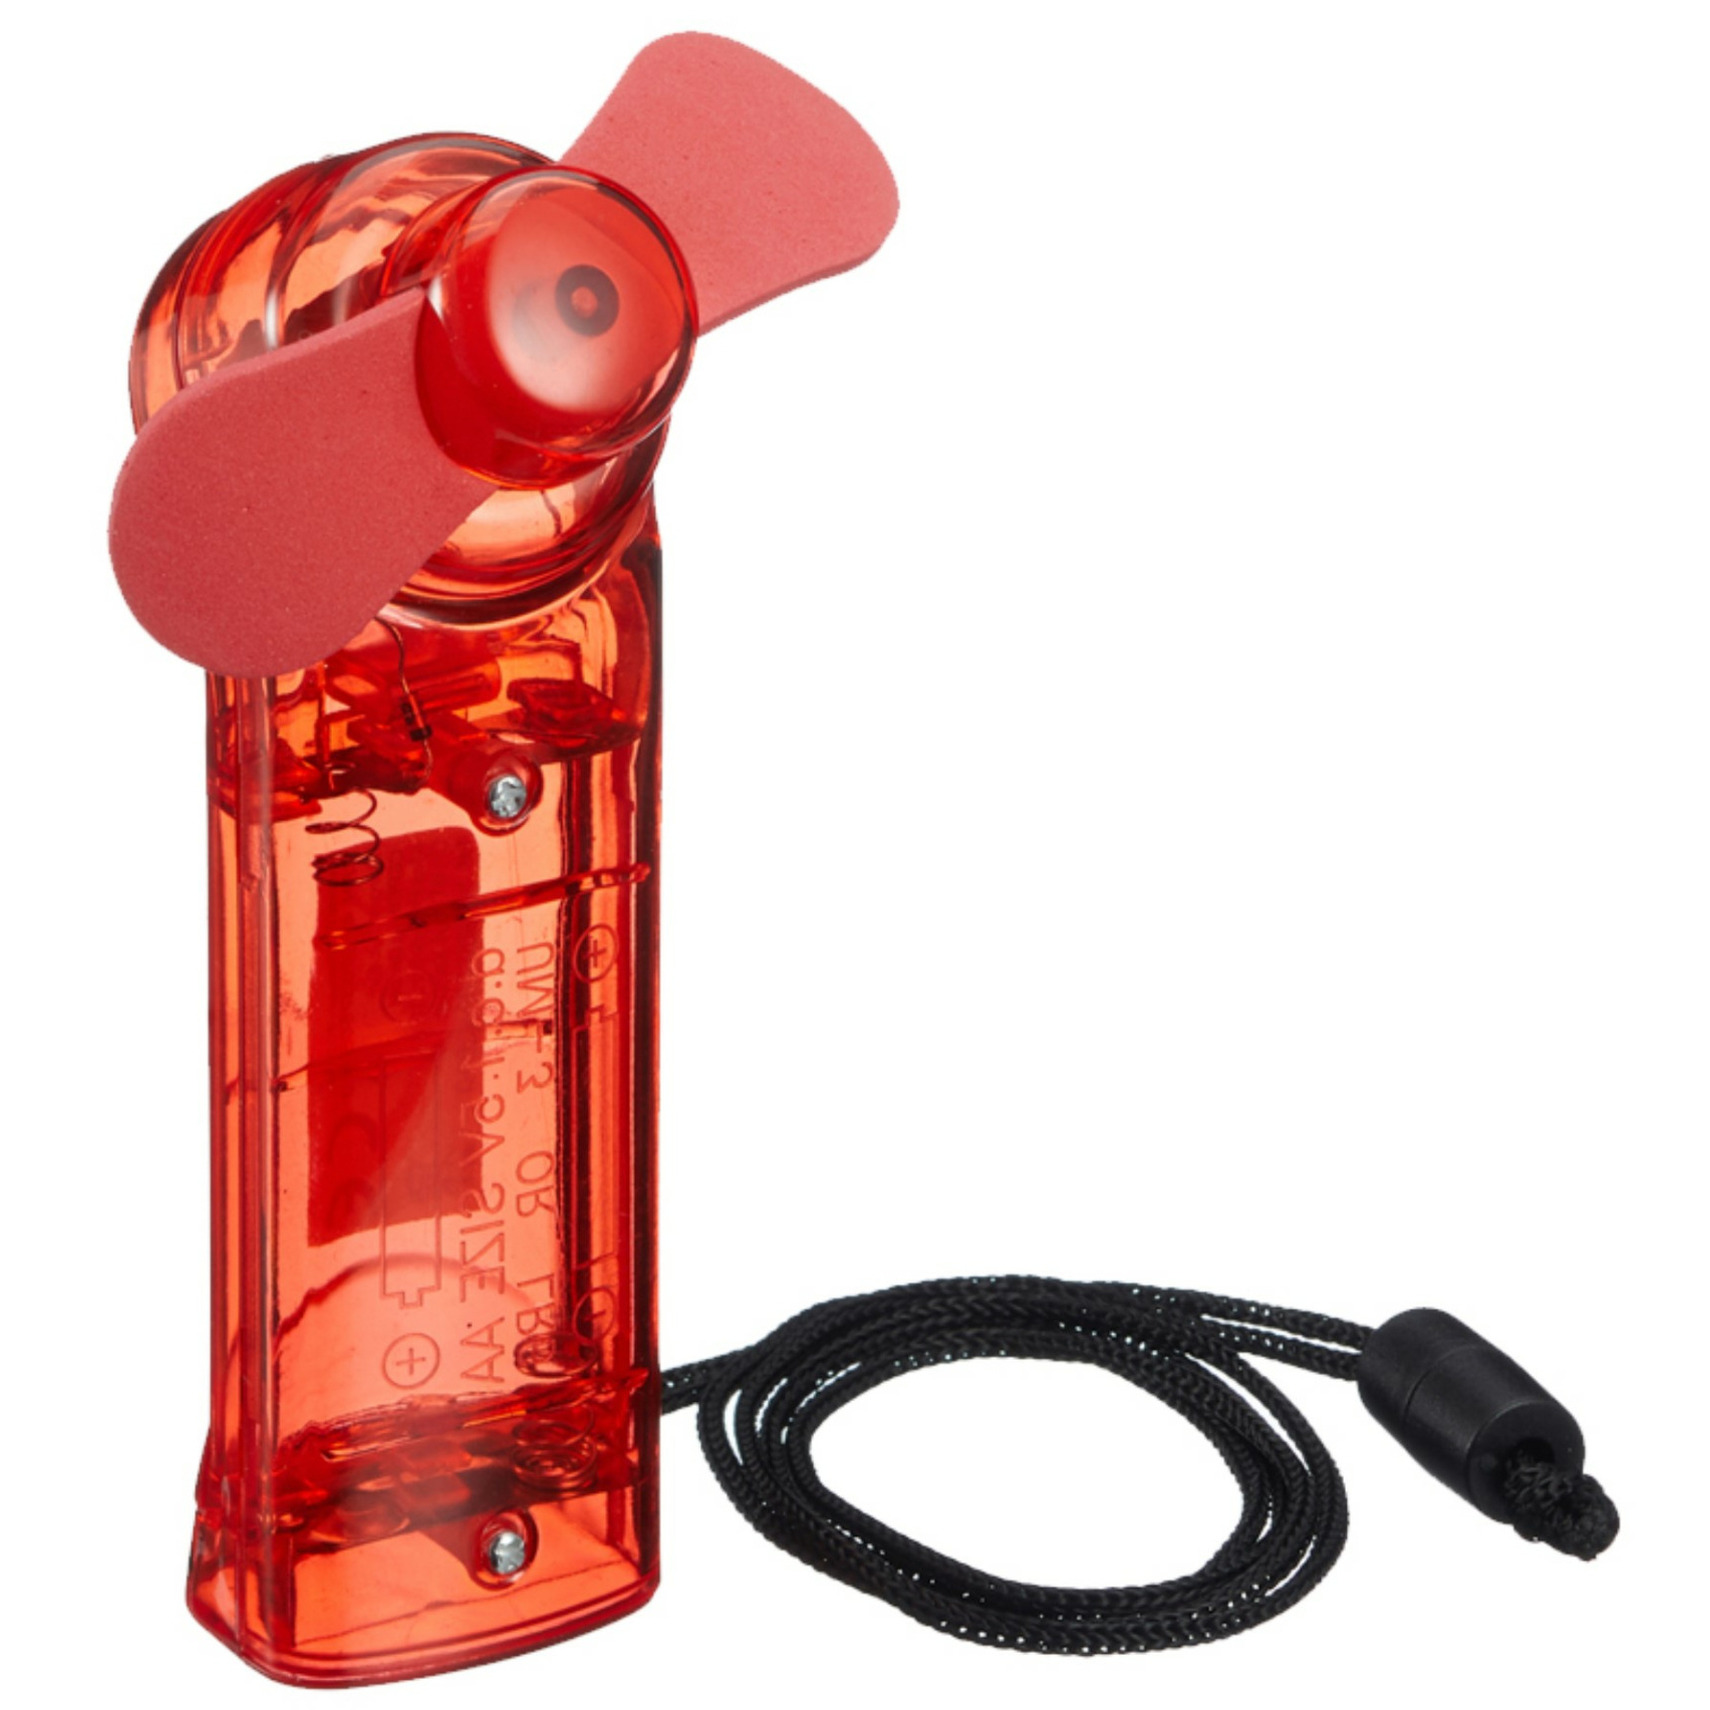 Ventilator voor in je hand Verkoeling in zomer 10 cm Rood